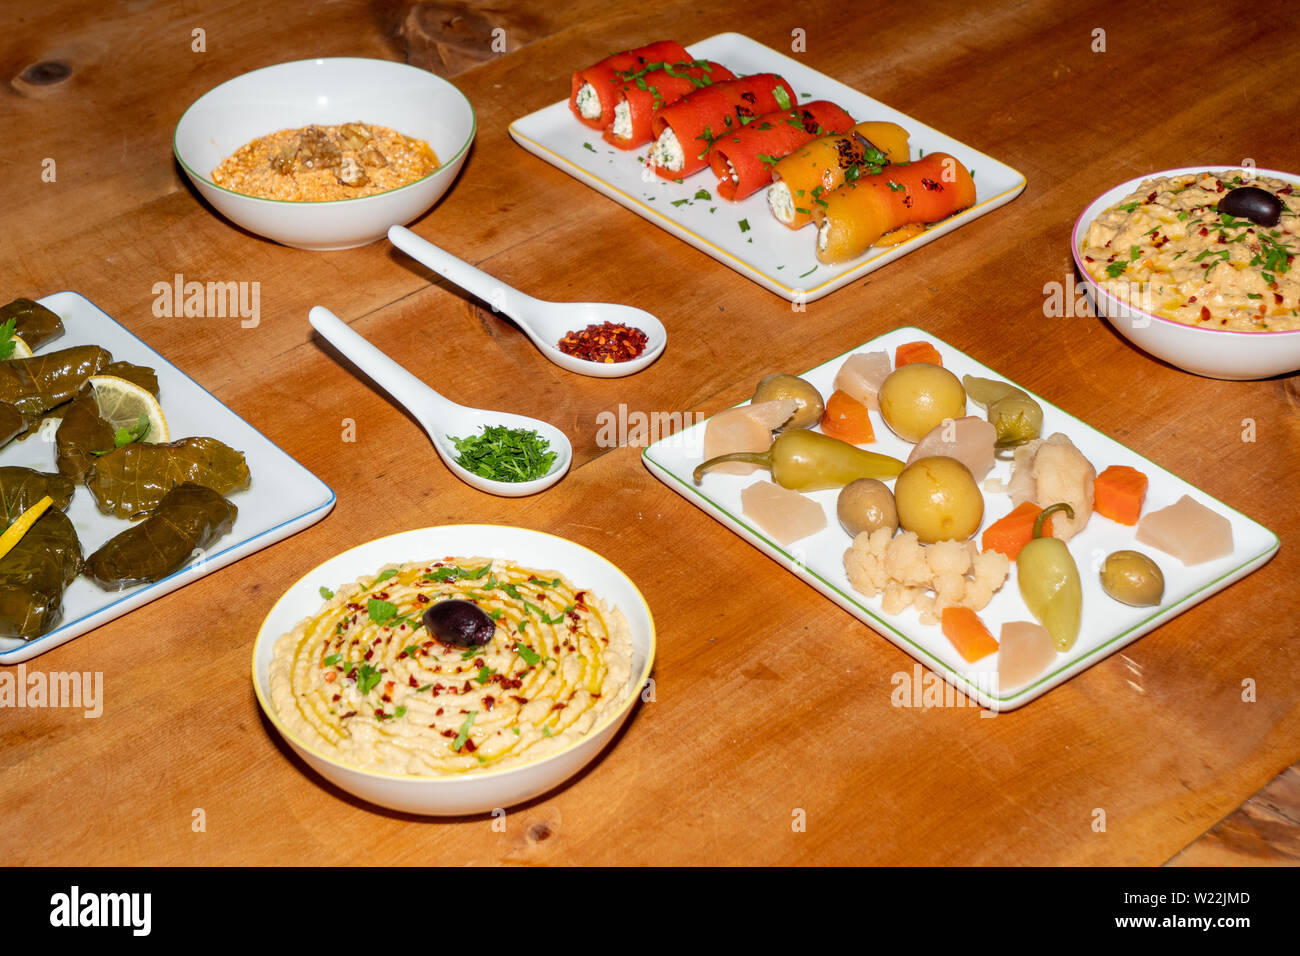 Meze sortierten Türkischen Vorspeisen auf einem Holztisch - gefüllte Weinblätter, Pfeffer Brötchen, Pickles, Hummus, Babaganoush Stockfoto